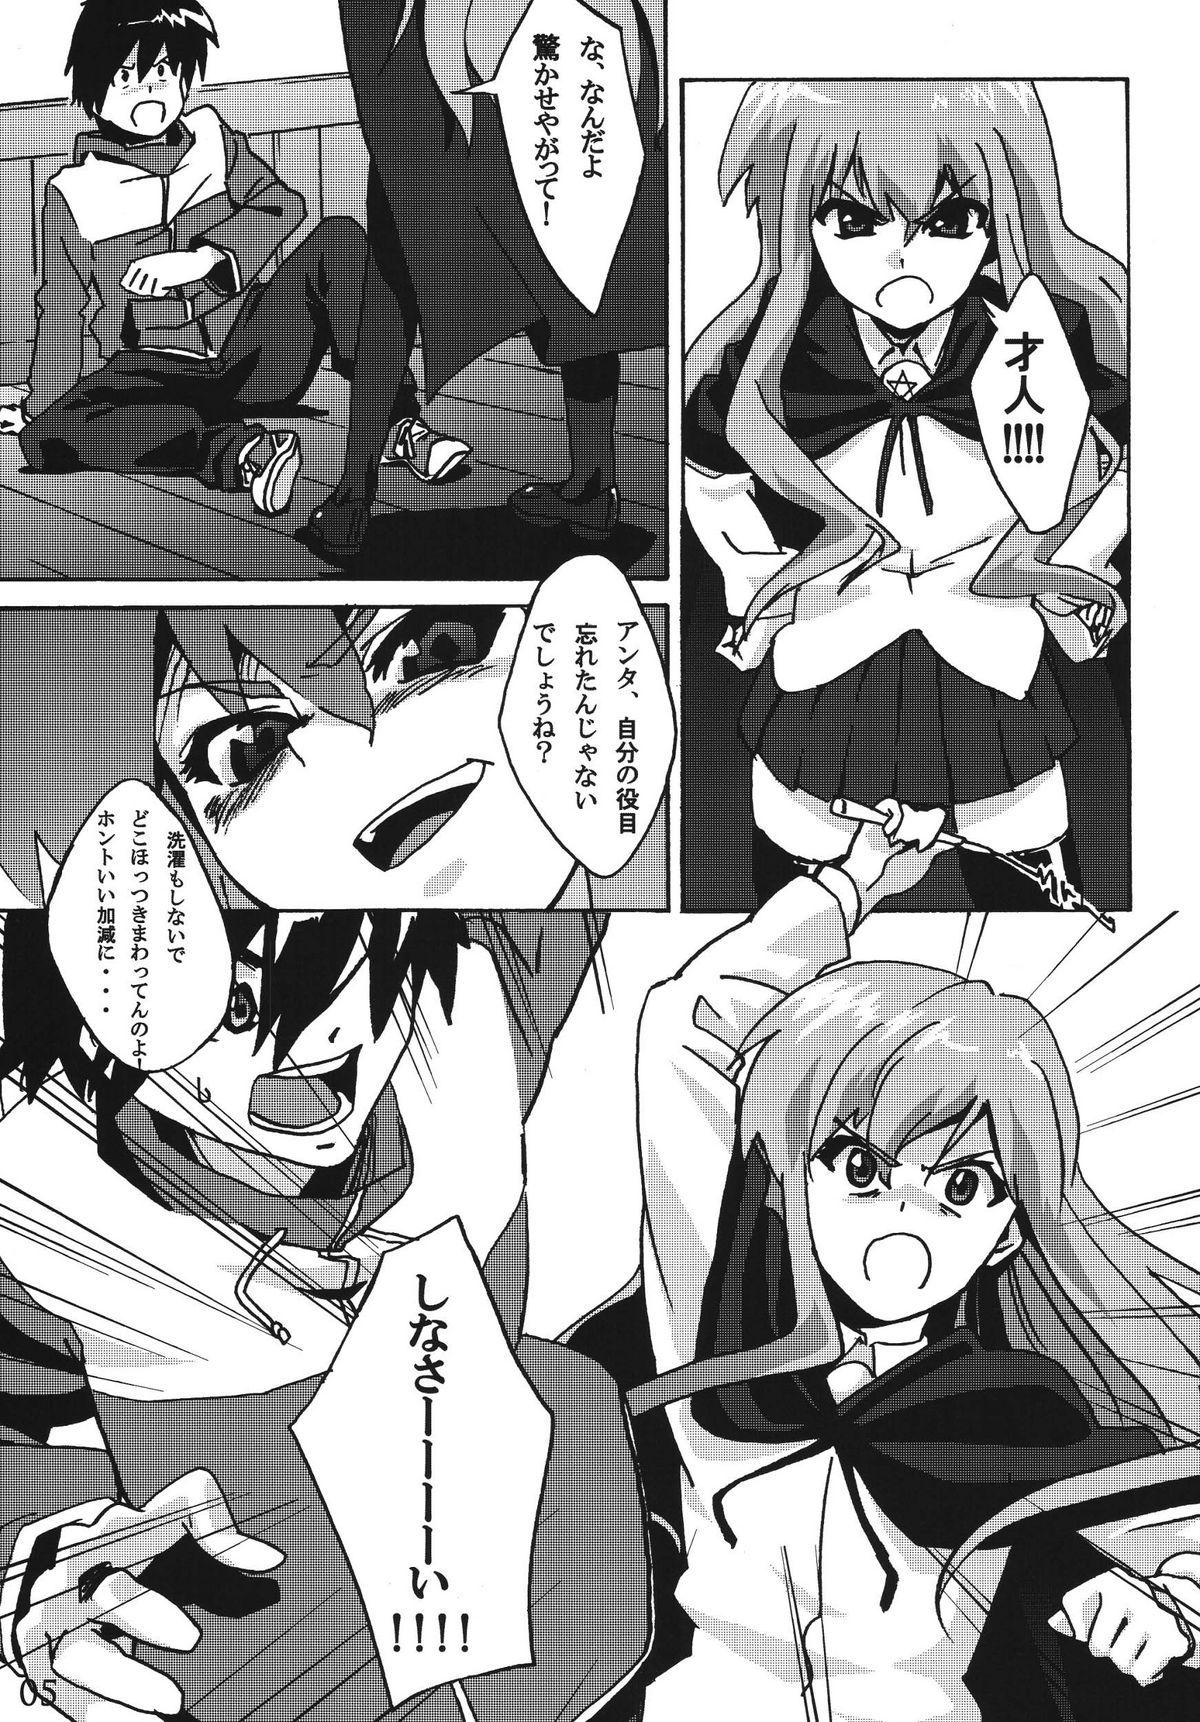 Naughty Mage no Kimochi - Zero no tsukaima Roundass - Page 3